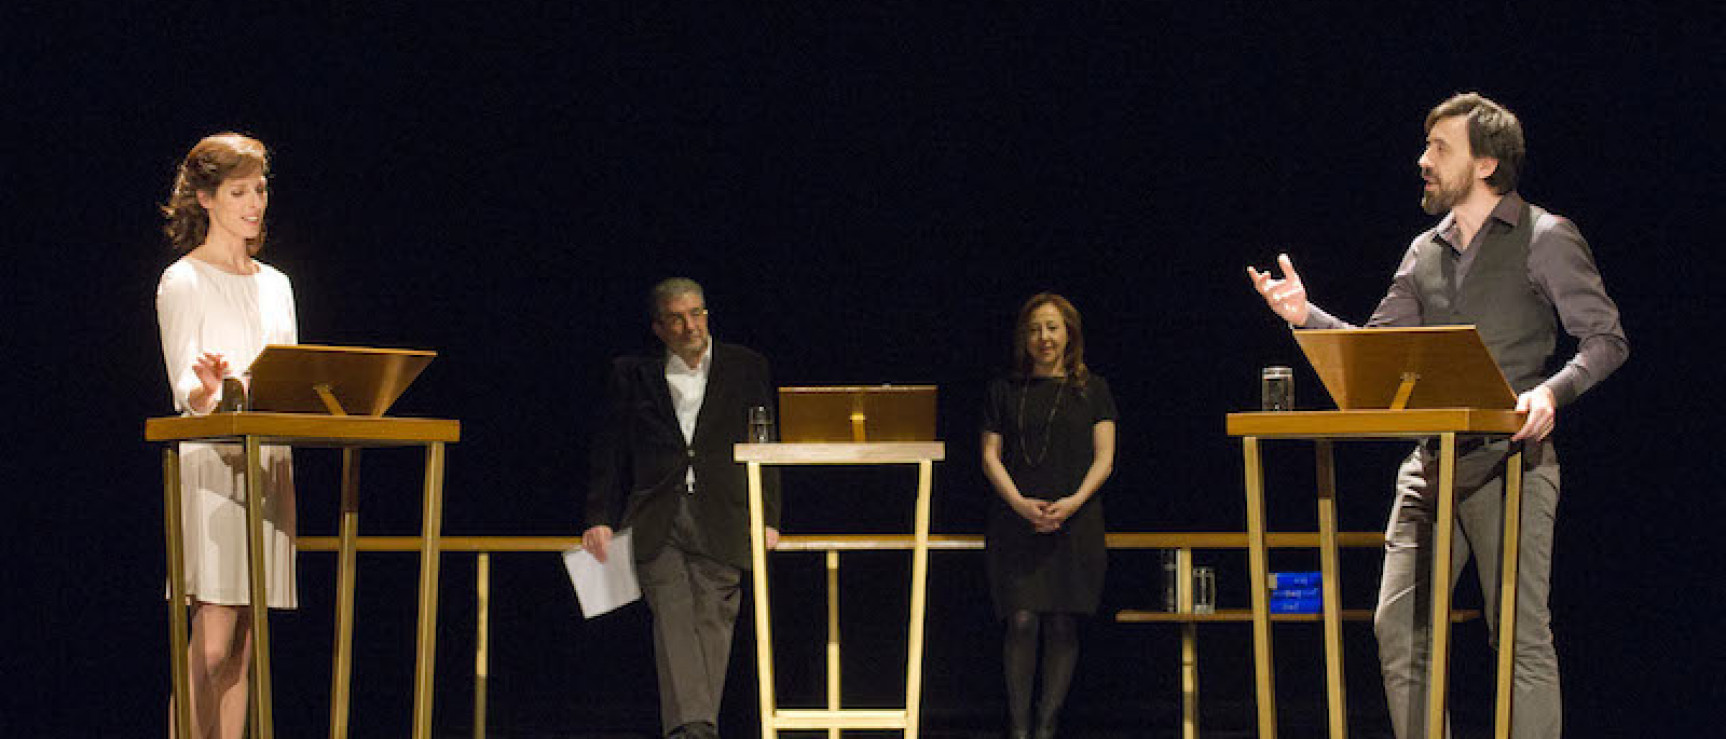 Beatriz Argüello, Carmen Machi e Israel Elejalde durante la representación. Foto: Daniel Alonso, CDT.